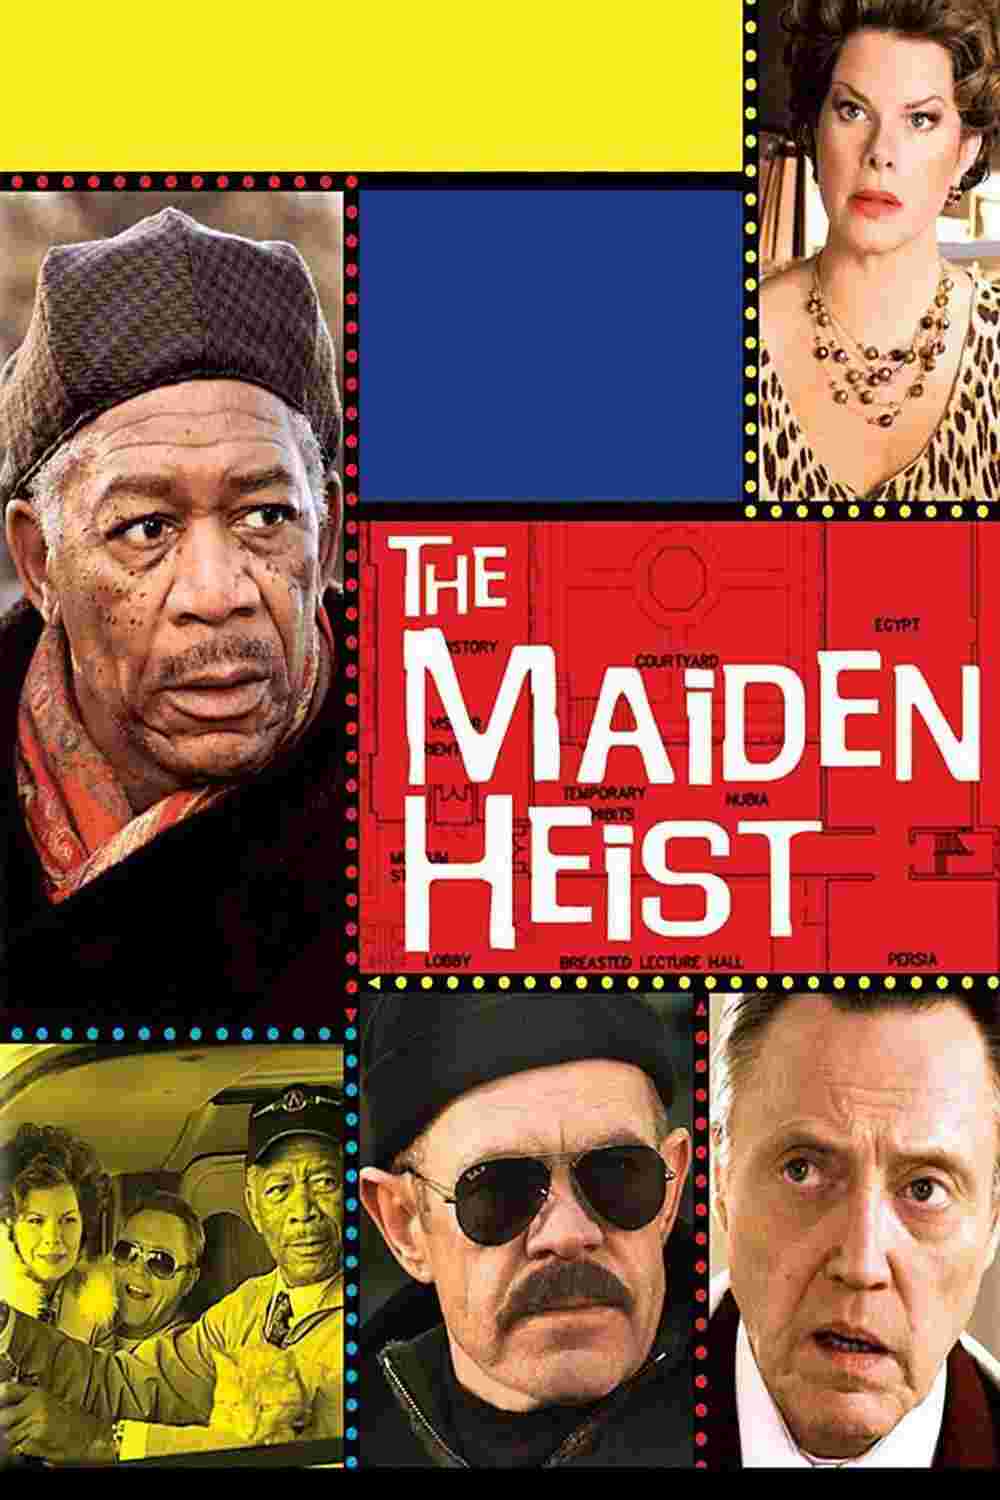 The Maiden Heist (2009) Christopher Walken